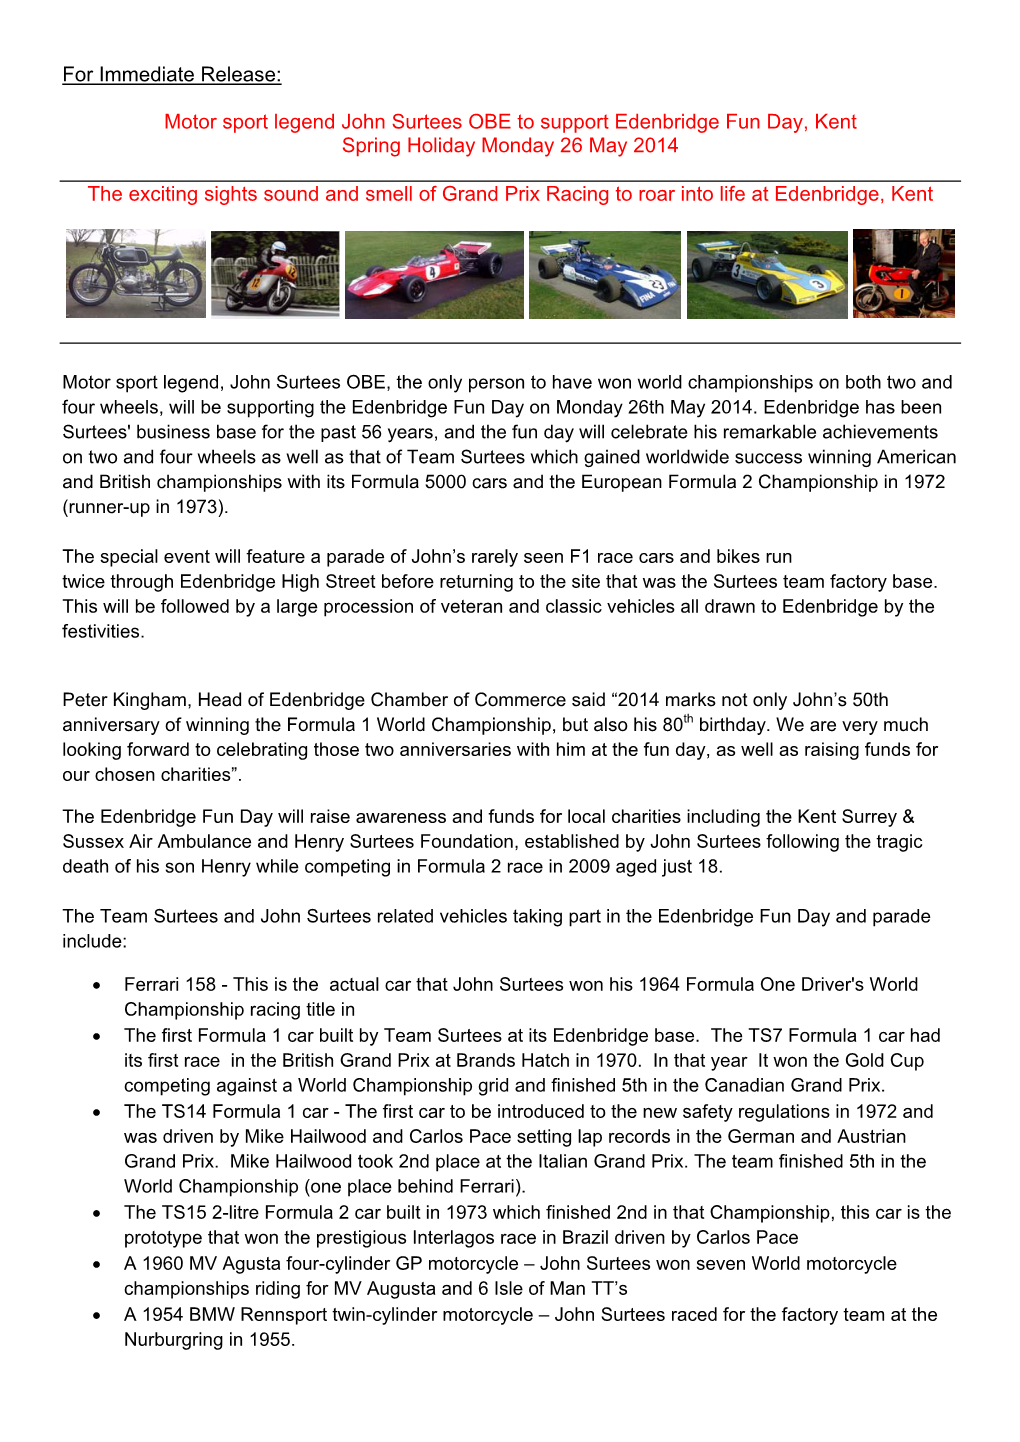 For Immediate Release: Motor Sport Legend John Surtees OBE To